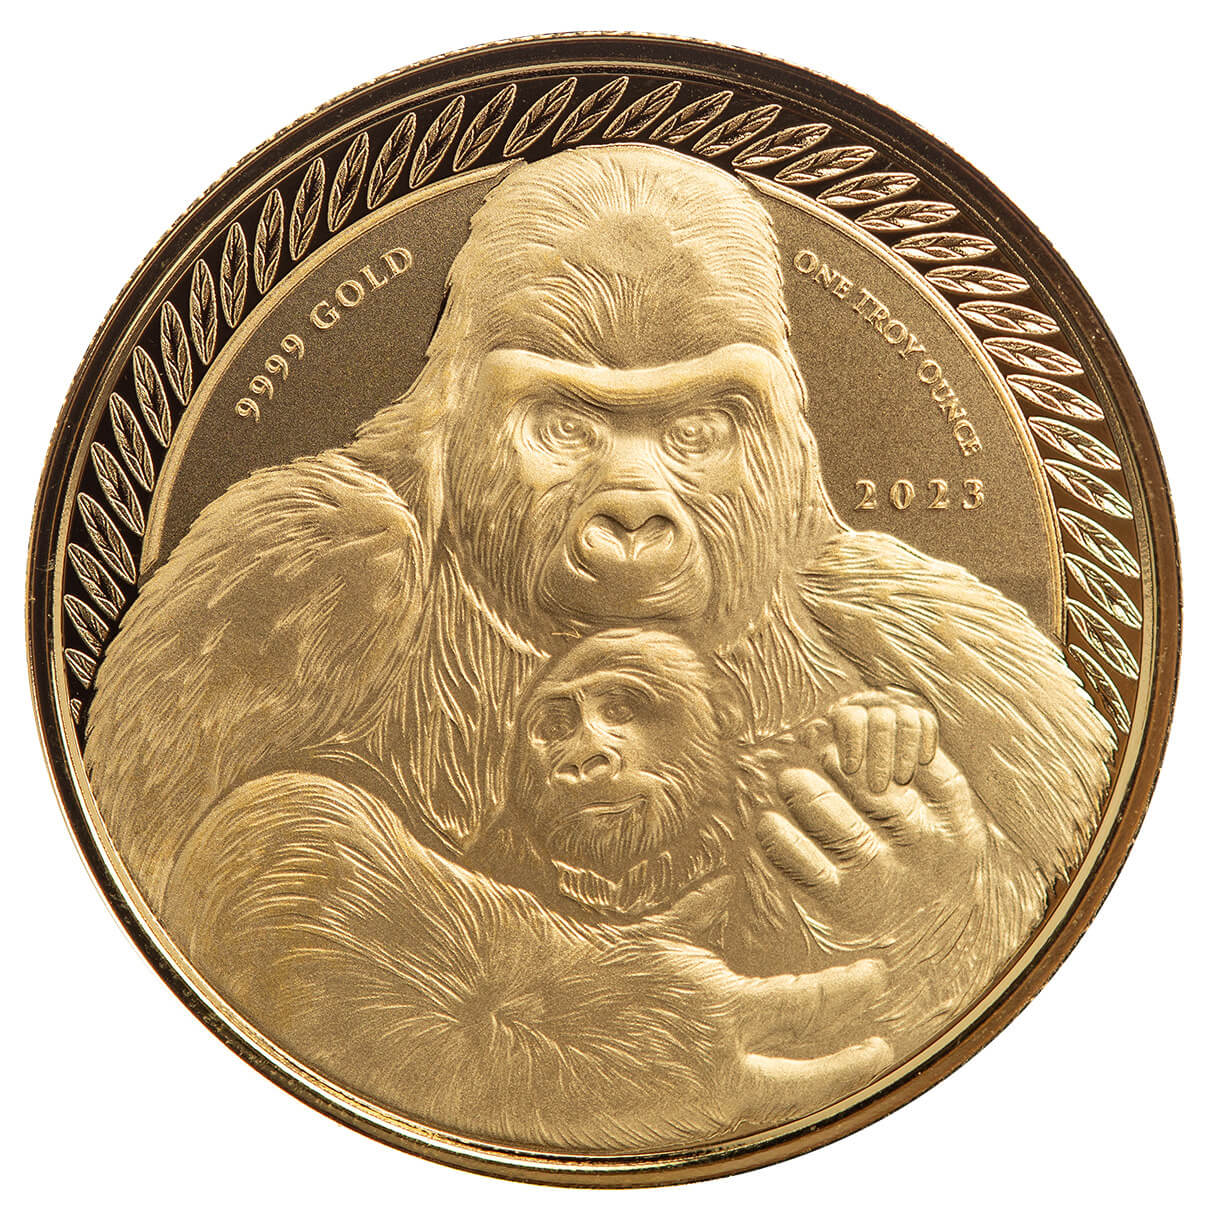 2023 Congo Silverback Gorilla 1 oz Proof Gold Coin